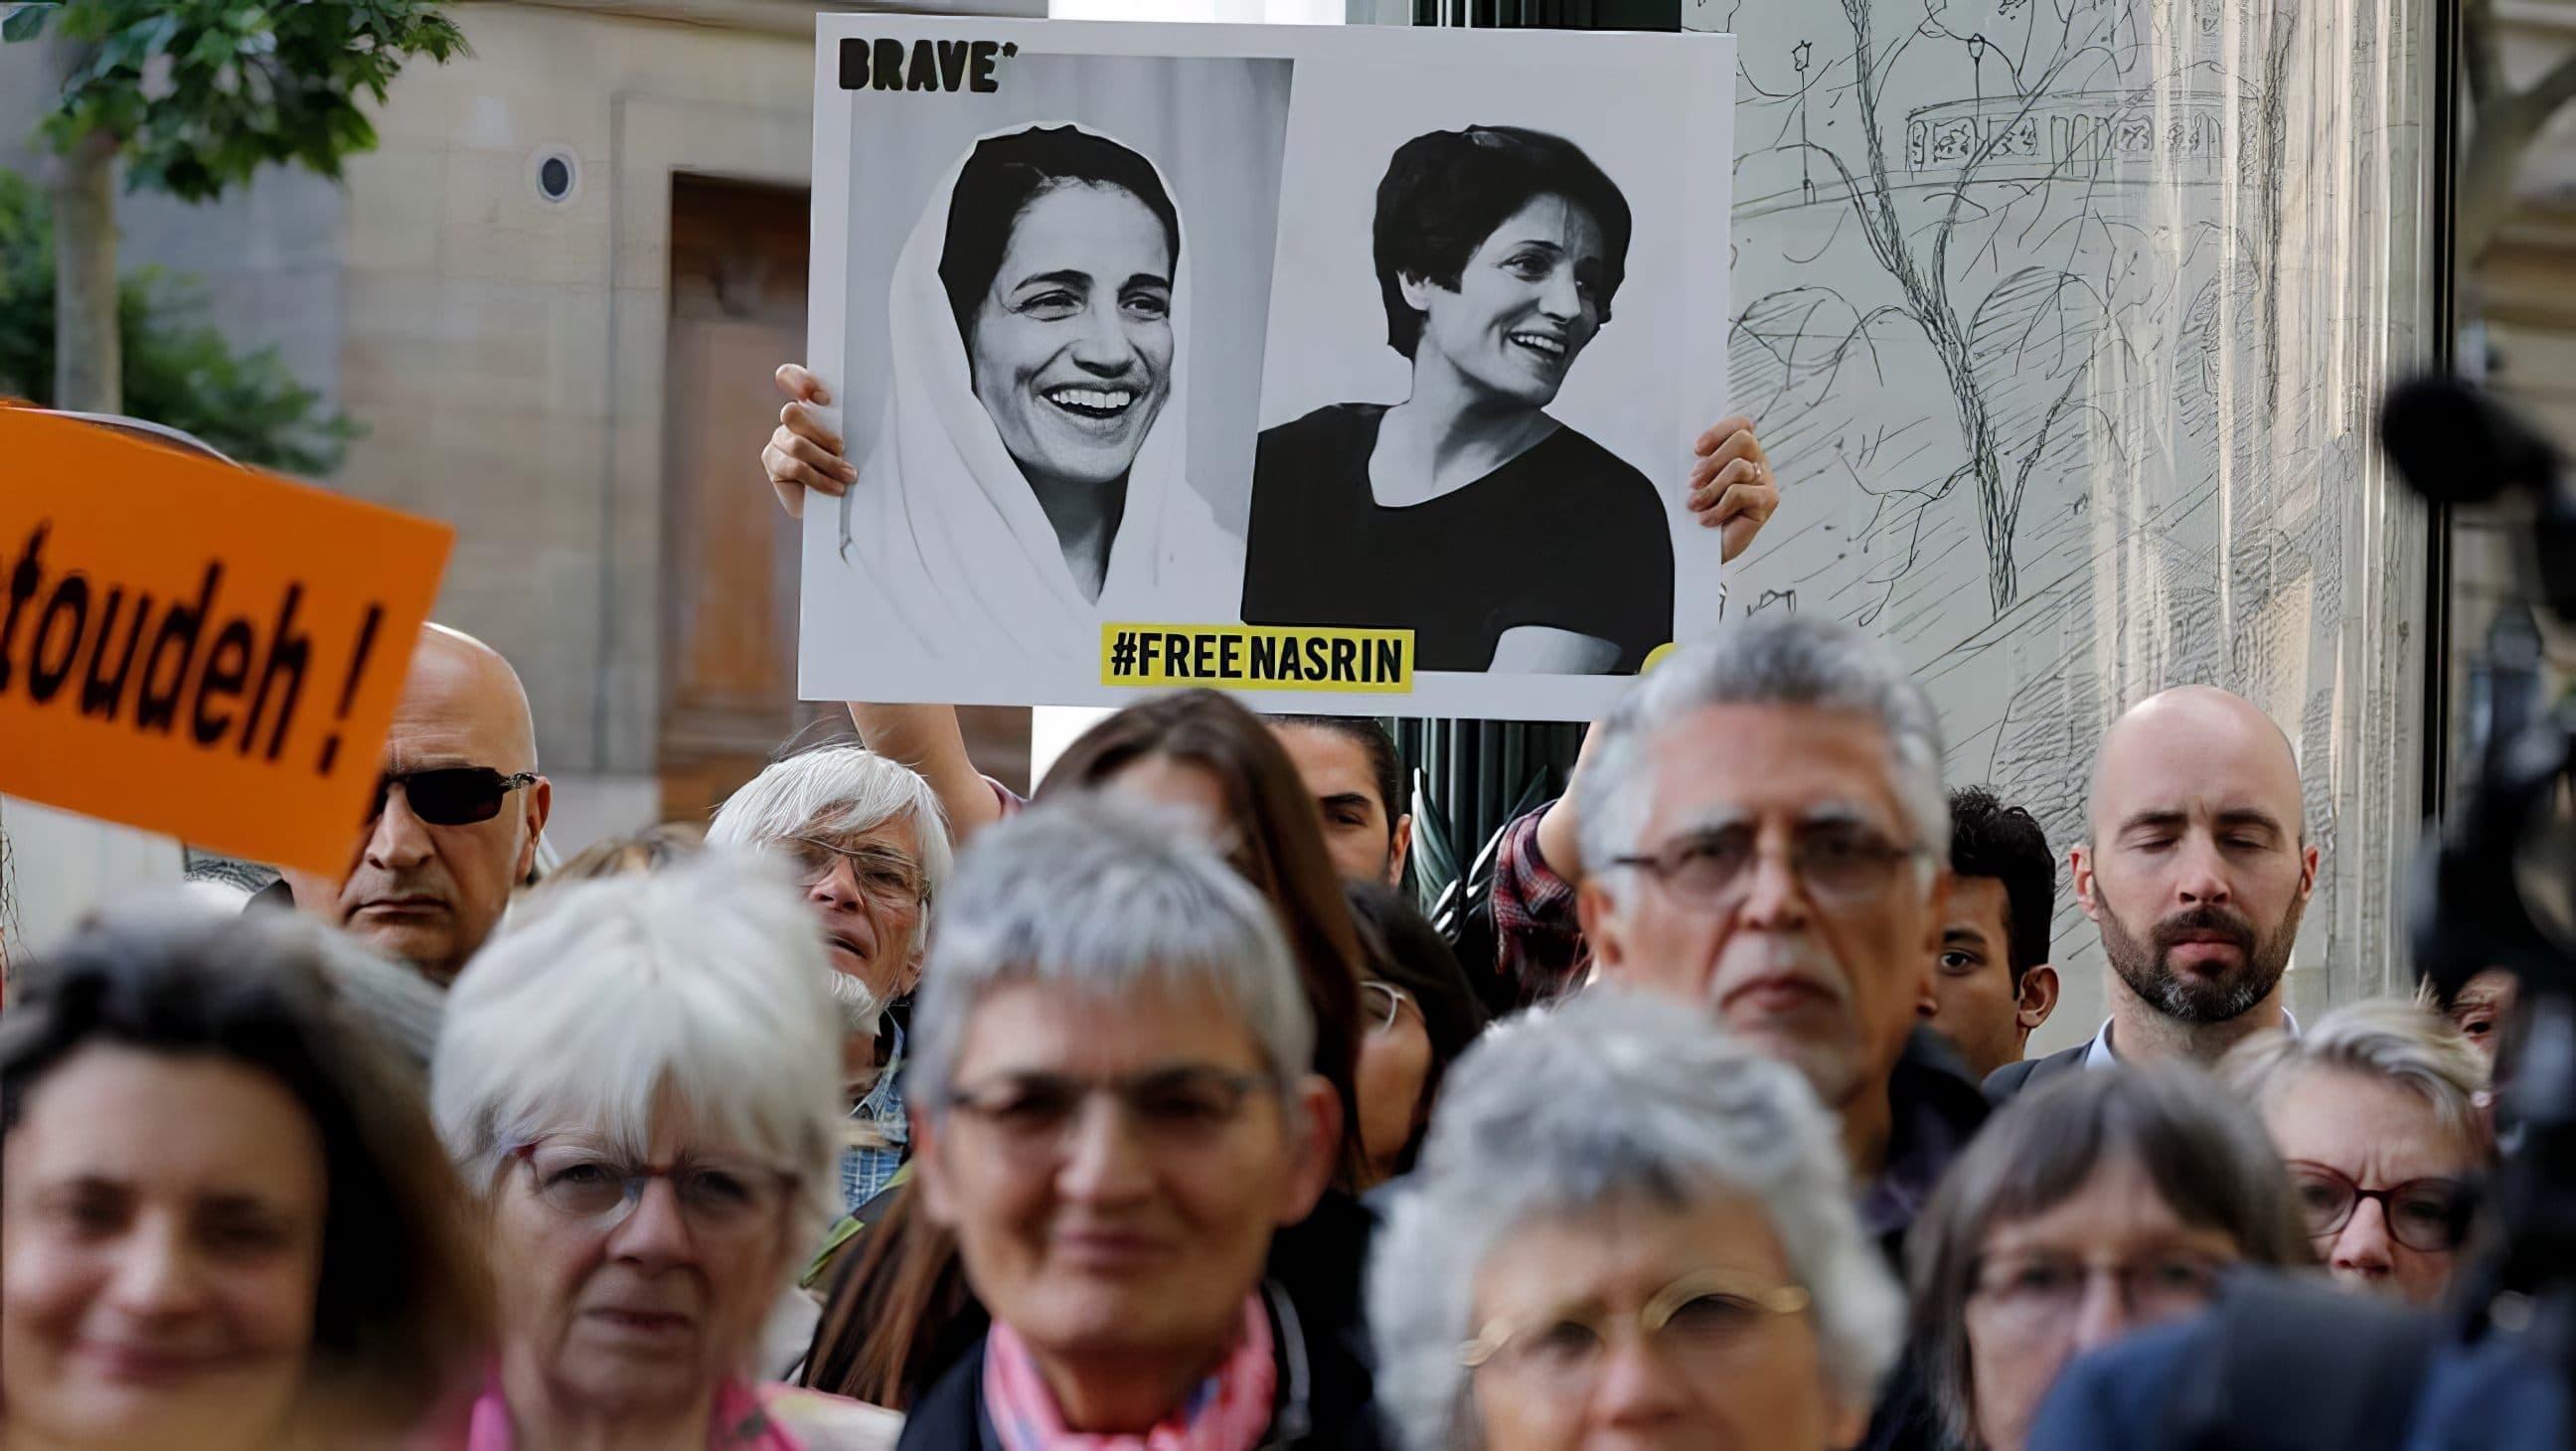 Nasrin Sotoudeh backdrop